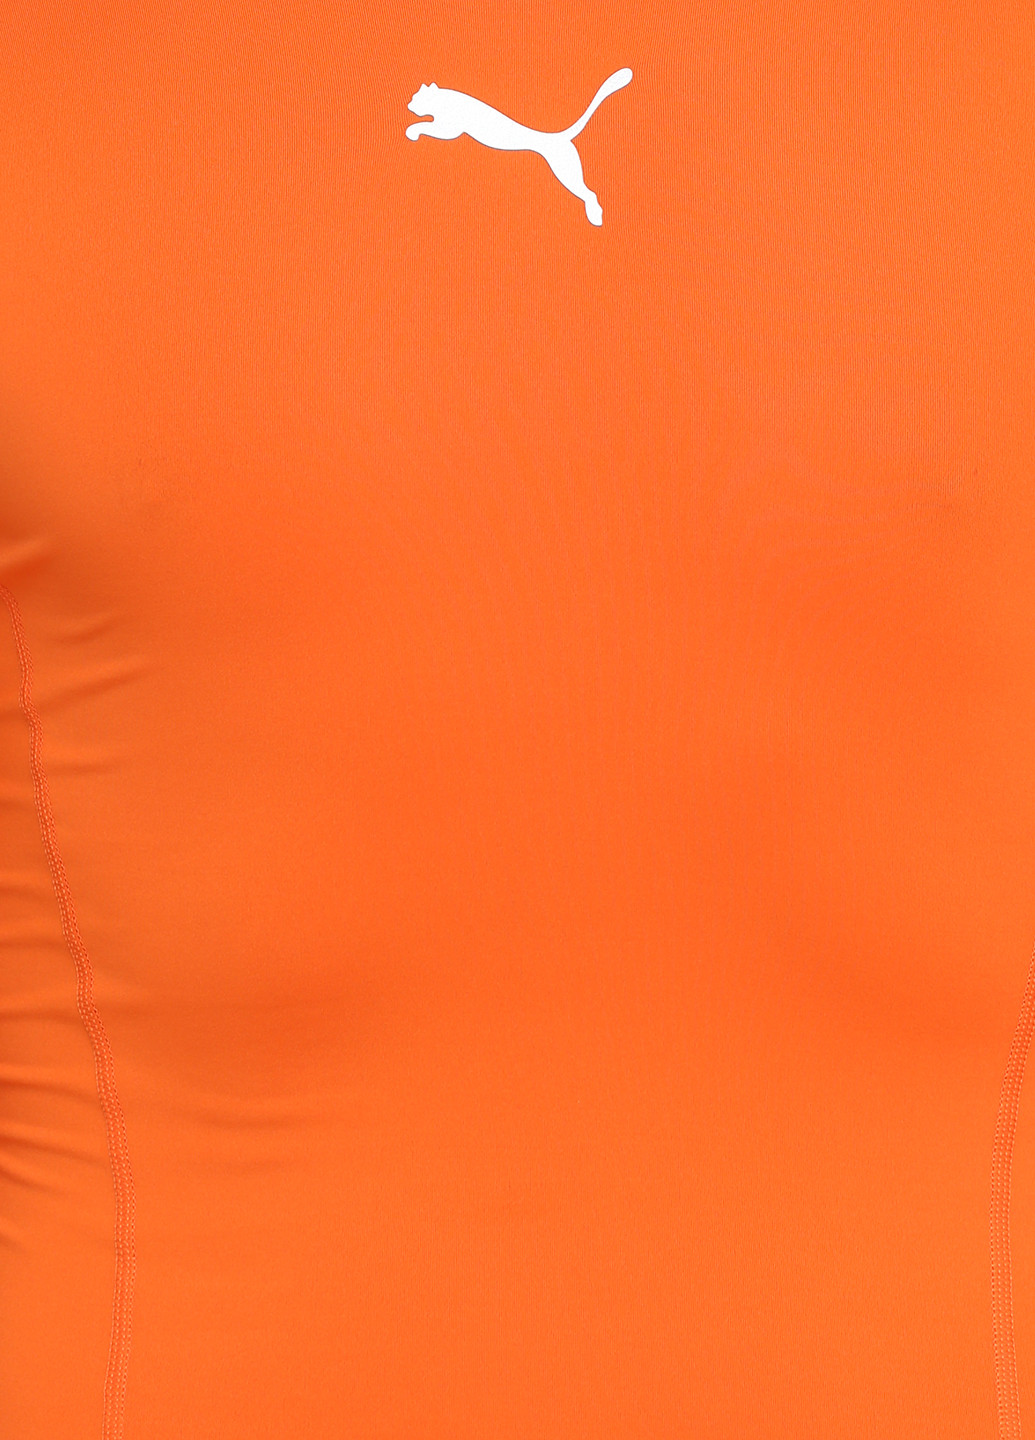 Реглан Puma с длинным рукавом логотип оранжевый спортивный